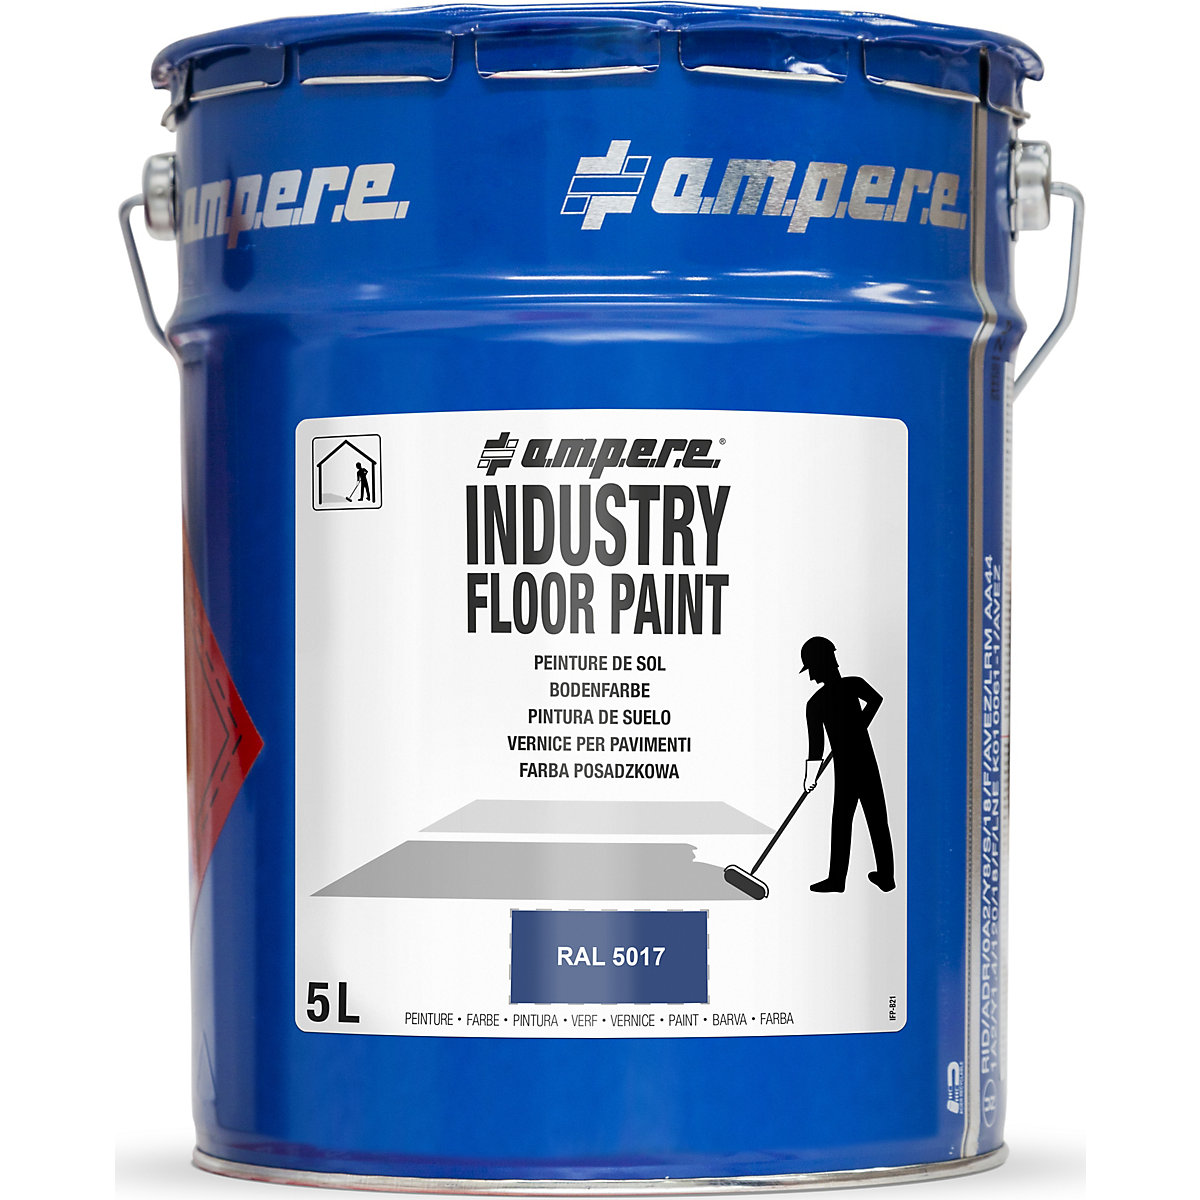 Vloermarkeringsverf Industry Floor Paint® – Ampere, inhoud 5 l, blauw-2